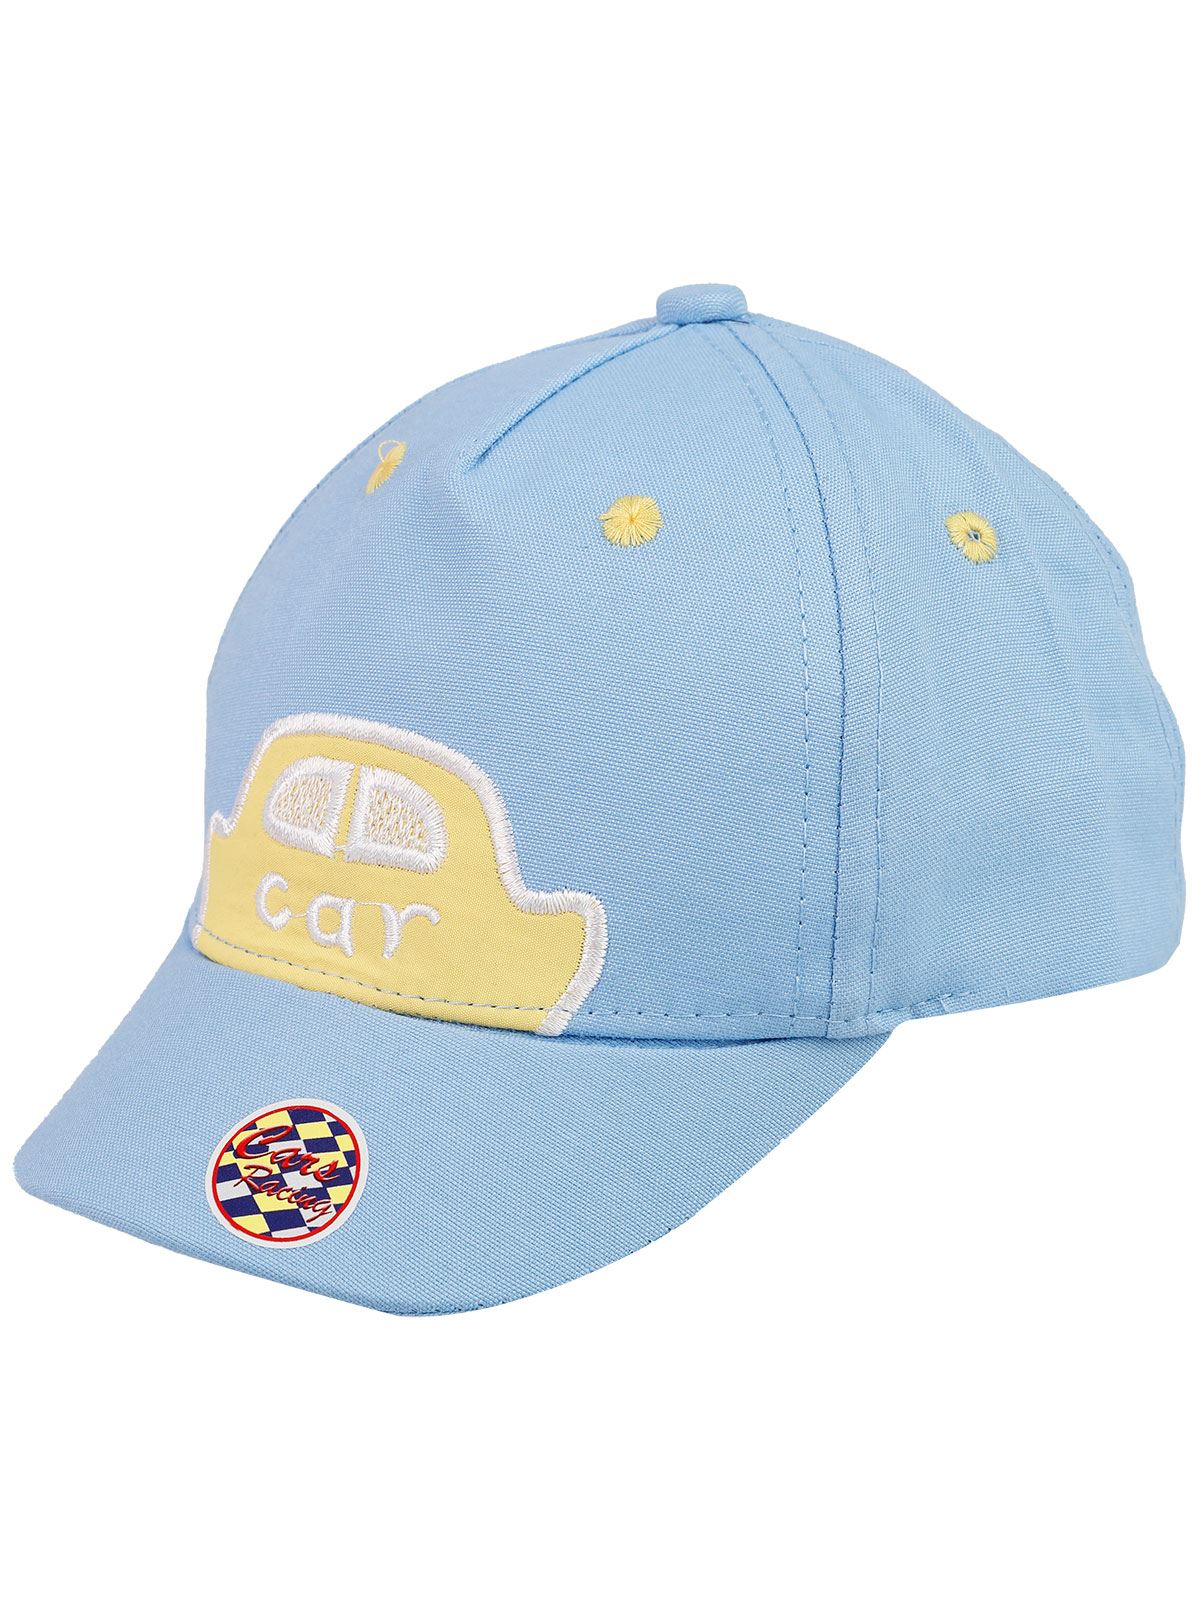 Tidi Erkek Bebek Kep Şapka 0-18 Ay Açık Mavi